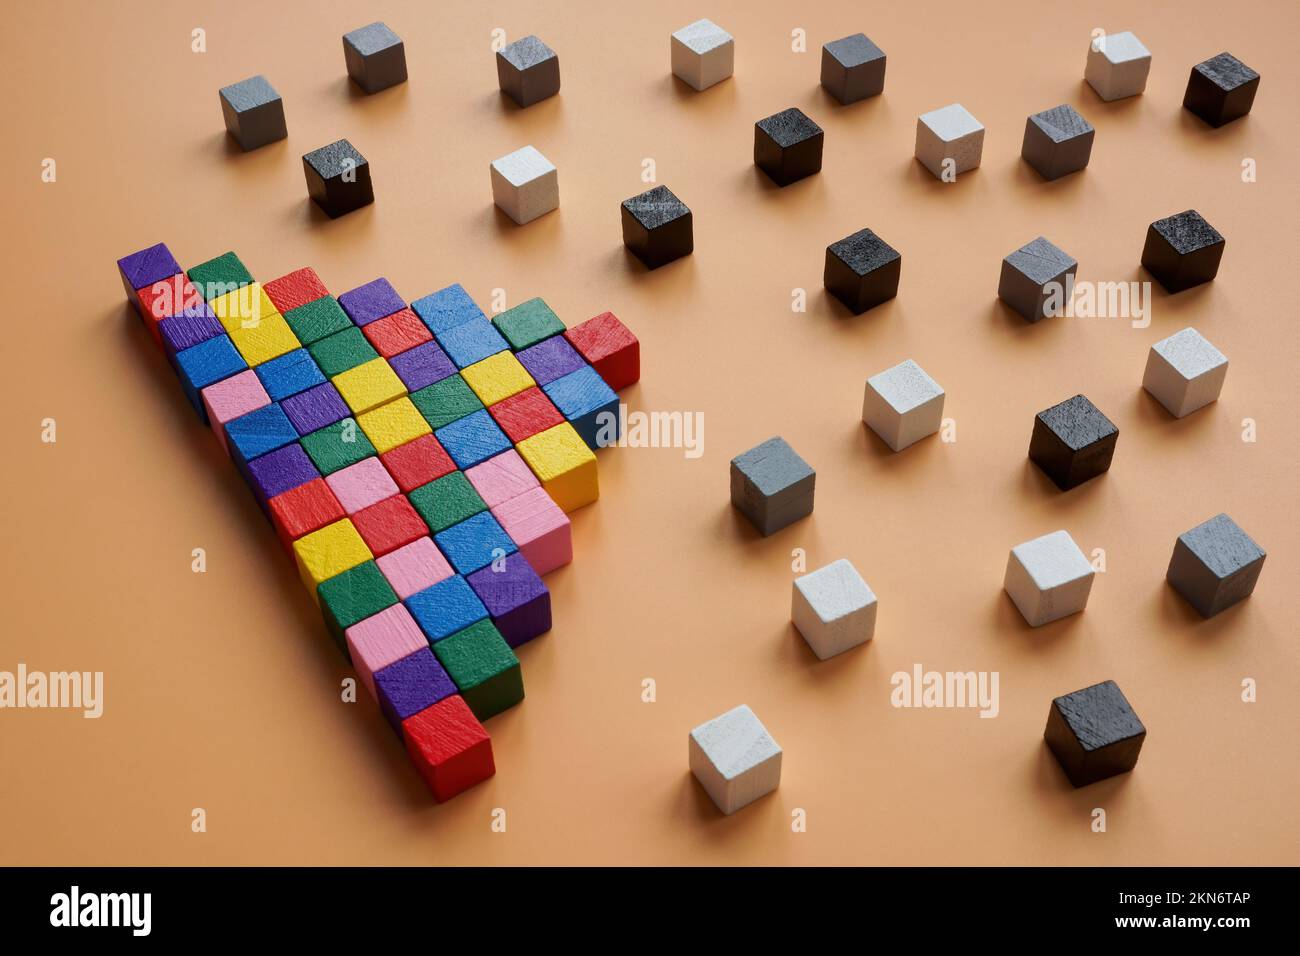 Pyramide de cubes colorés et gris et noirs autour. Diversité et inclusion dans la société. Banque D'Images